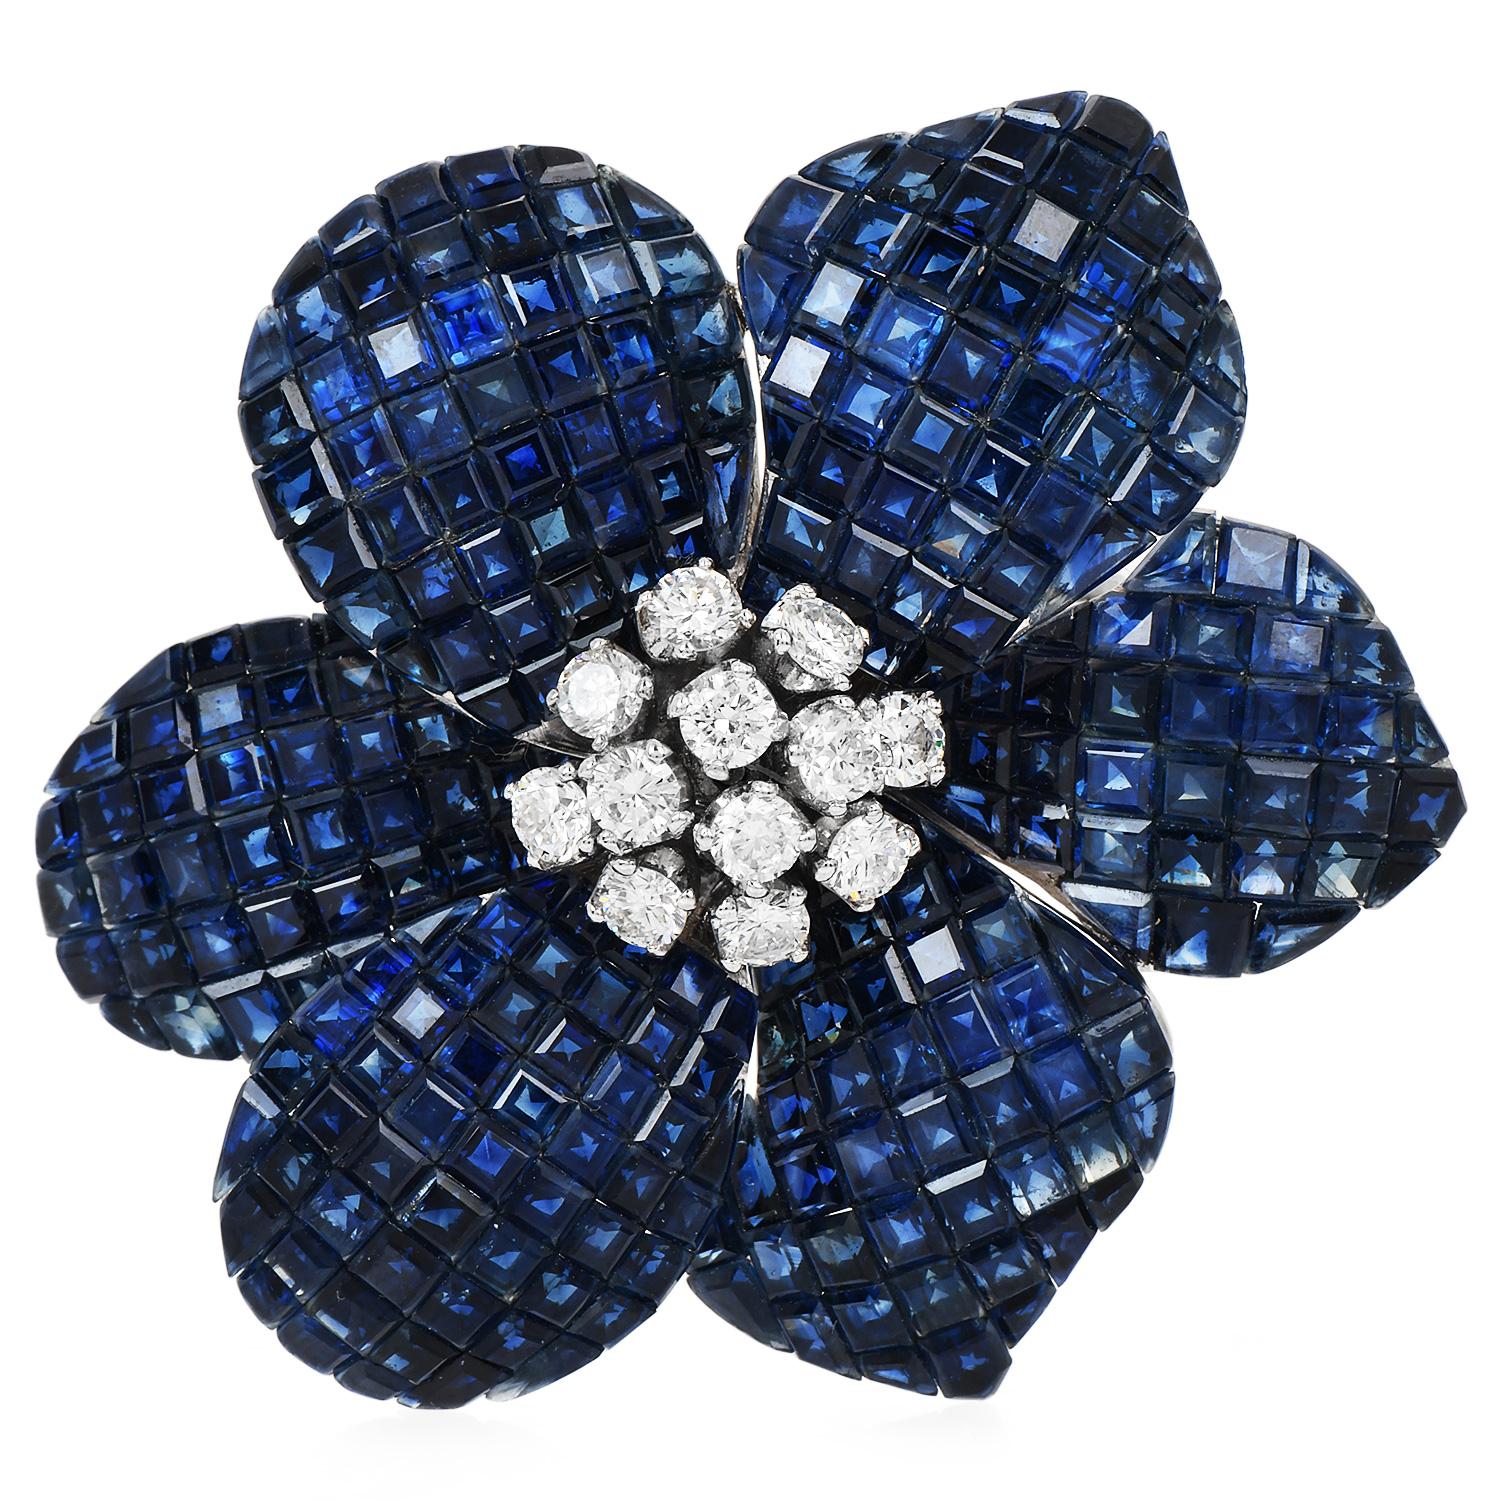 Die Vintage Diamond Blue Sapphire 18K White Gold Flower Brooch, ist die perfekte Ergänzung für einen Schal oder eine Bluse.

Der aus 18-karätigem Weißgold gefertigte Anhänger ist zeitlos schön und glänzt.

Im Mittelpunkt dieses Schmuckstücks steht